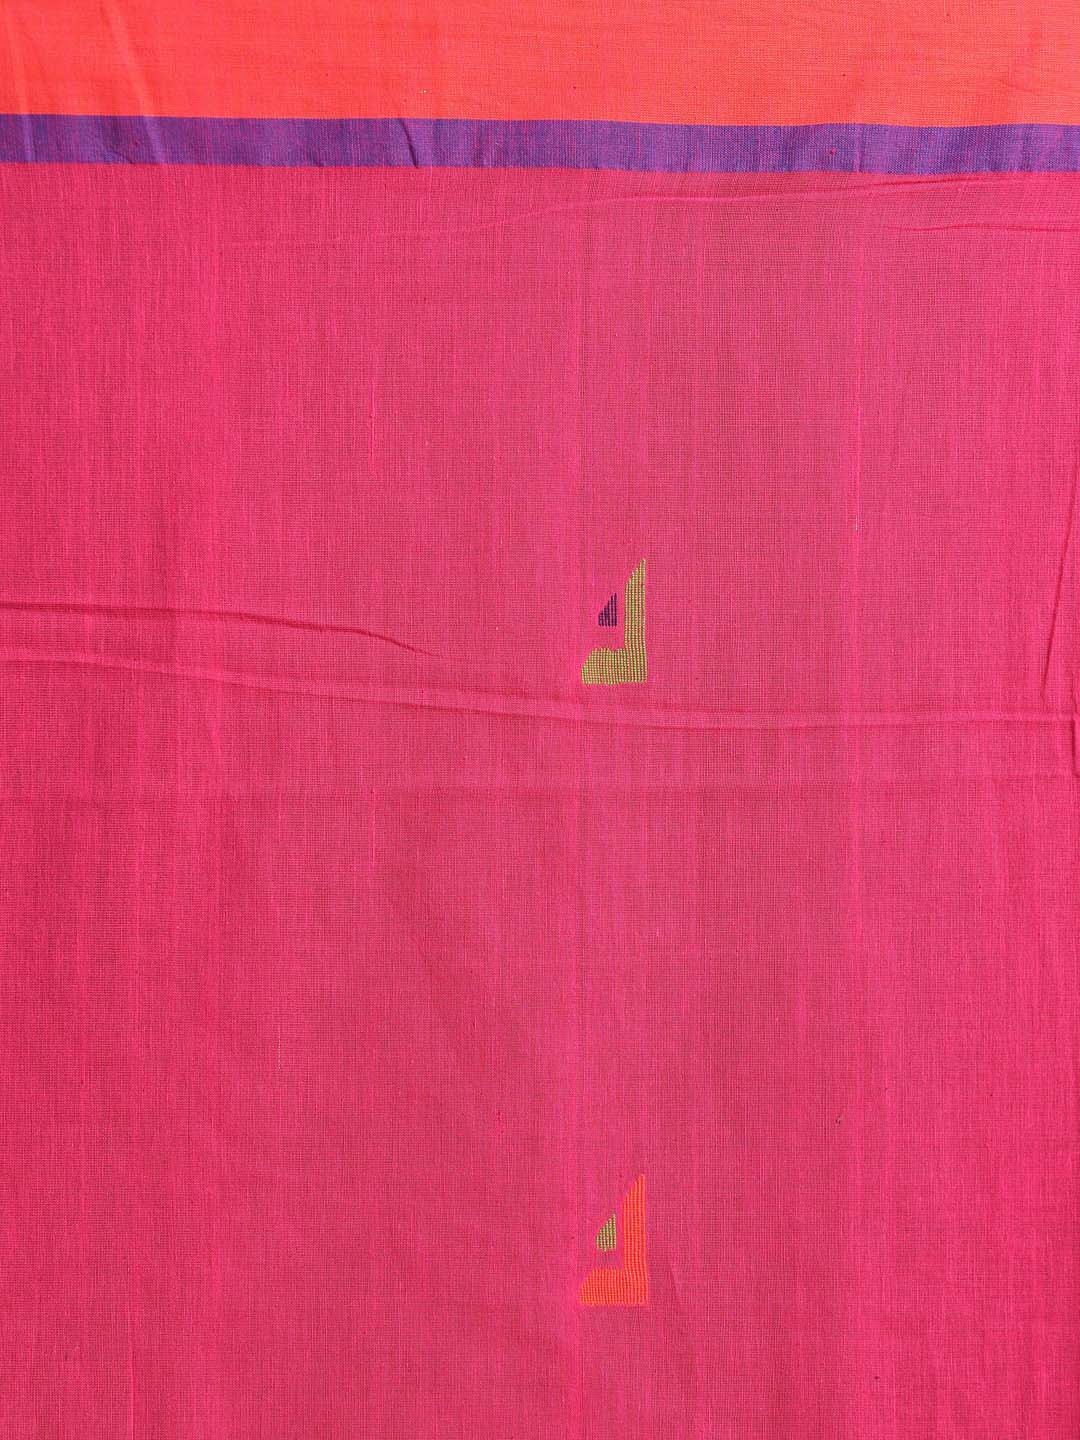 Indethnic Pink Bengal Handloom Pure Cotton Saree Work Saree - Saree Detail View